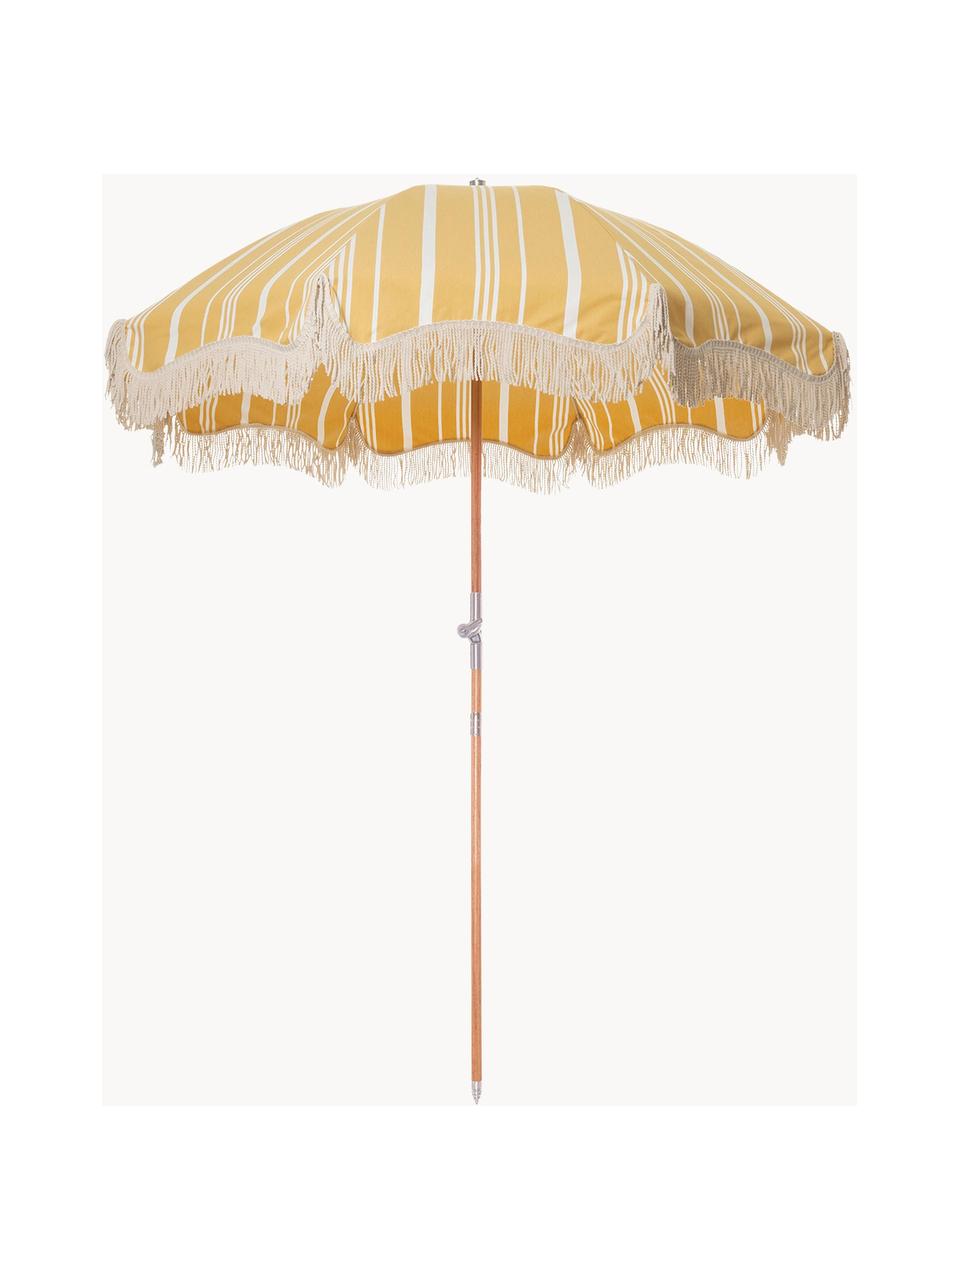 Skládací slunečník s třásněmi v retro stylu Retro, Žlutá, tlumeně bílá, Ø 180 cm, V 230 cm